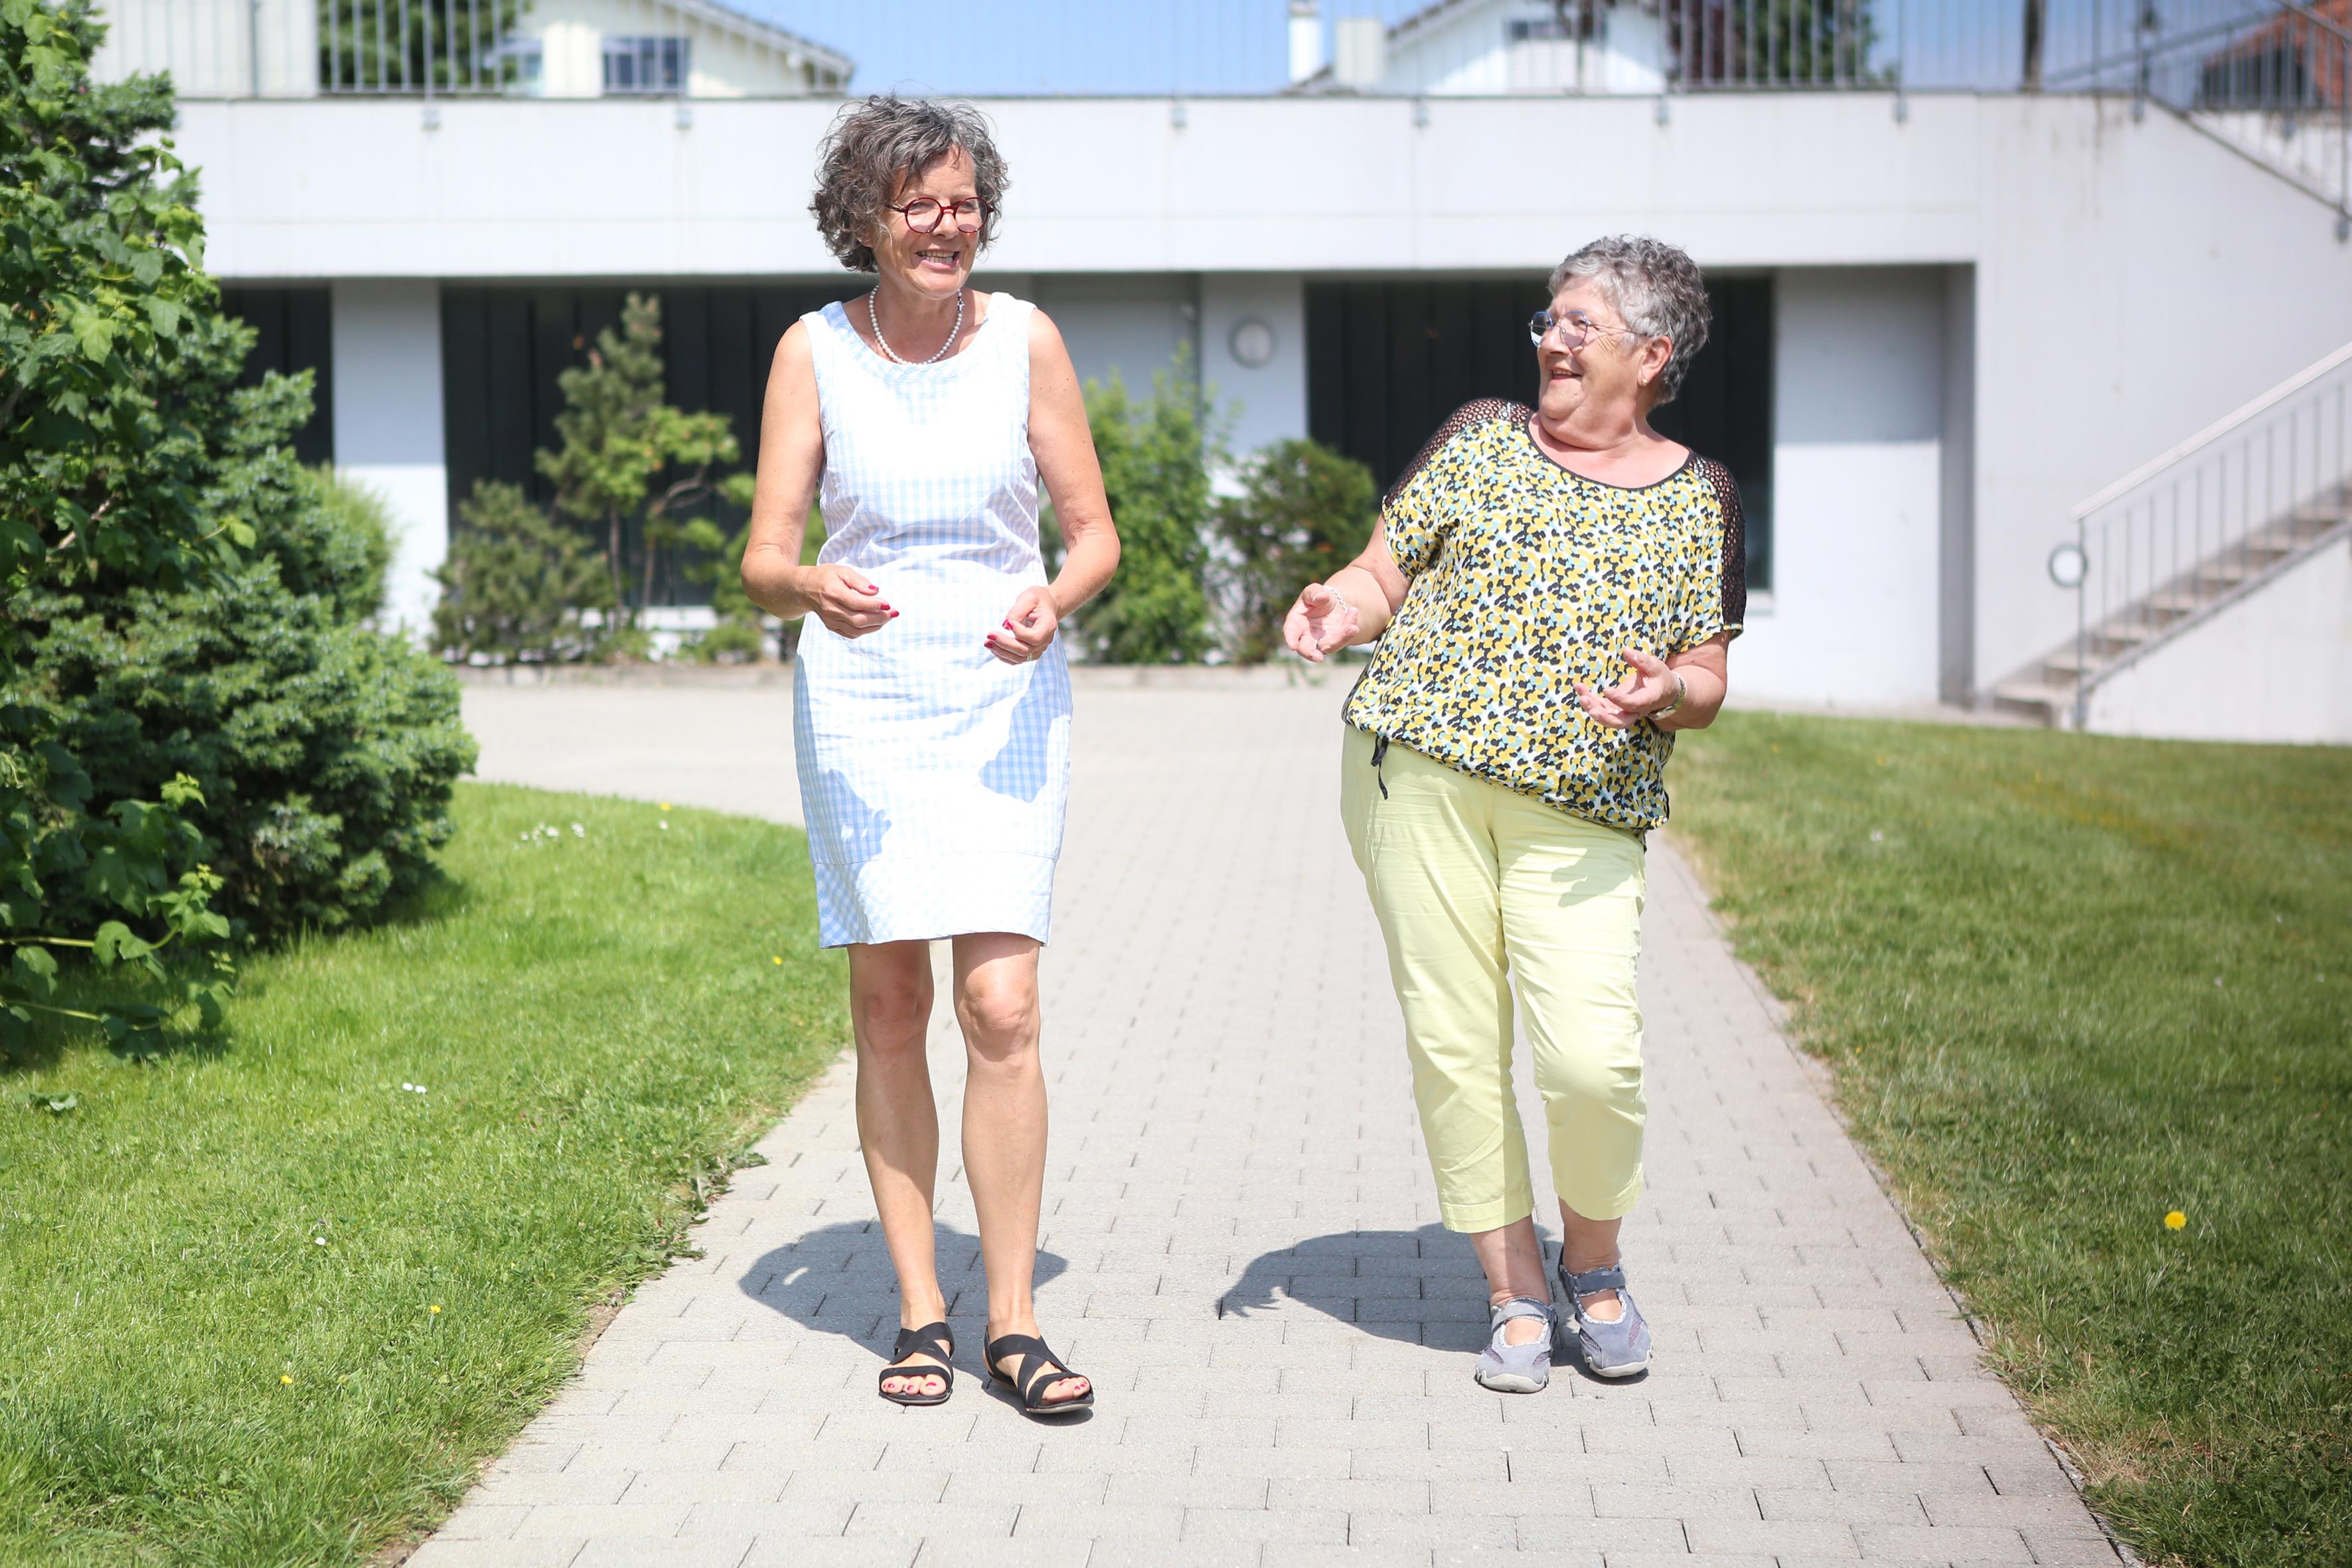 Martine Pipoz e Imelda Morard camminano insieme mentre chiacchierano. Entrambe sorridono.  